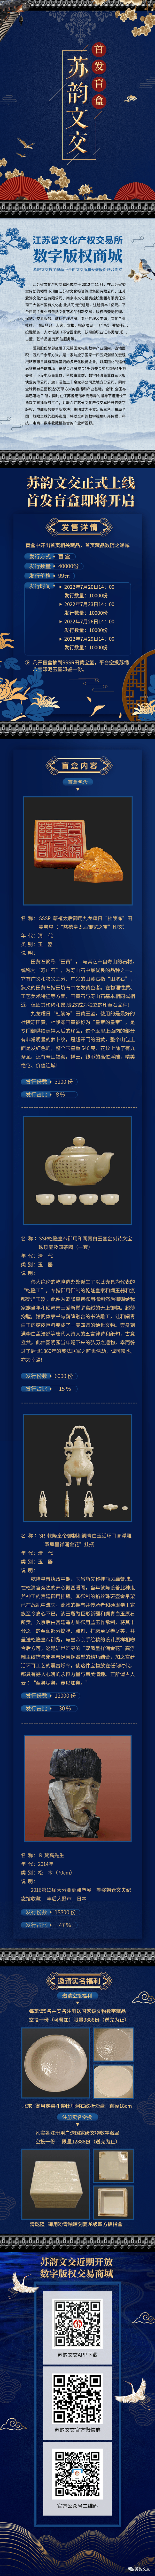 江苏省文交所和爱聚星数字版权商城首发盲盒即将开售-南方体育网